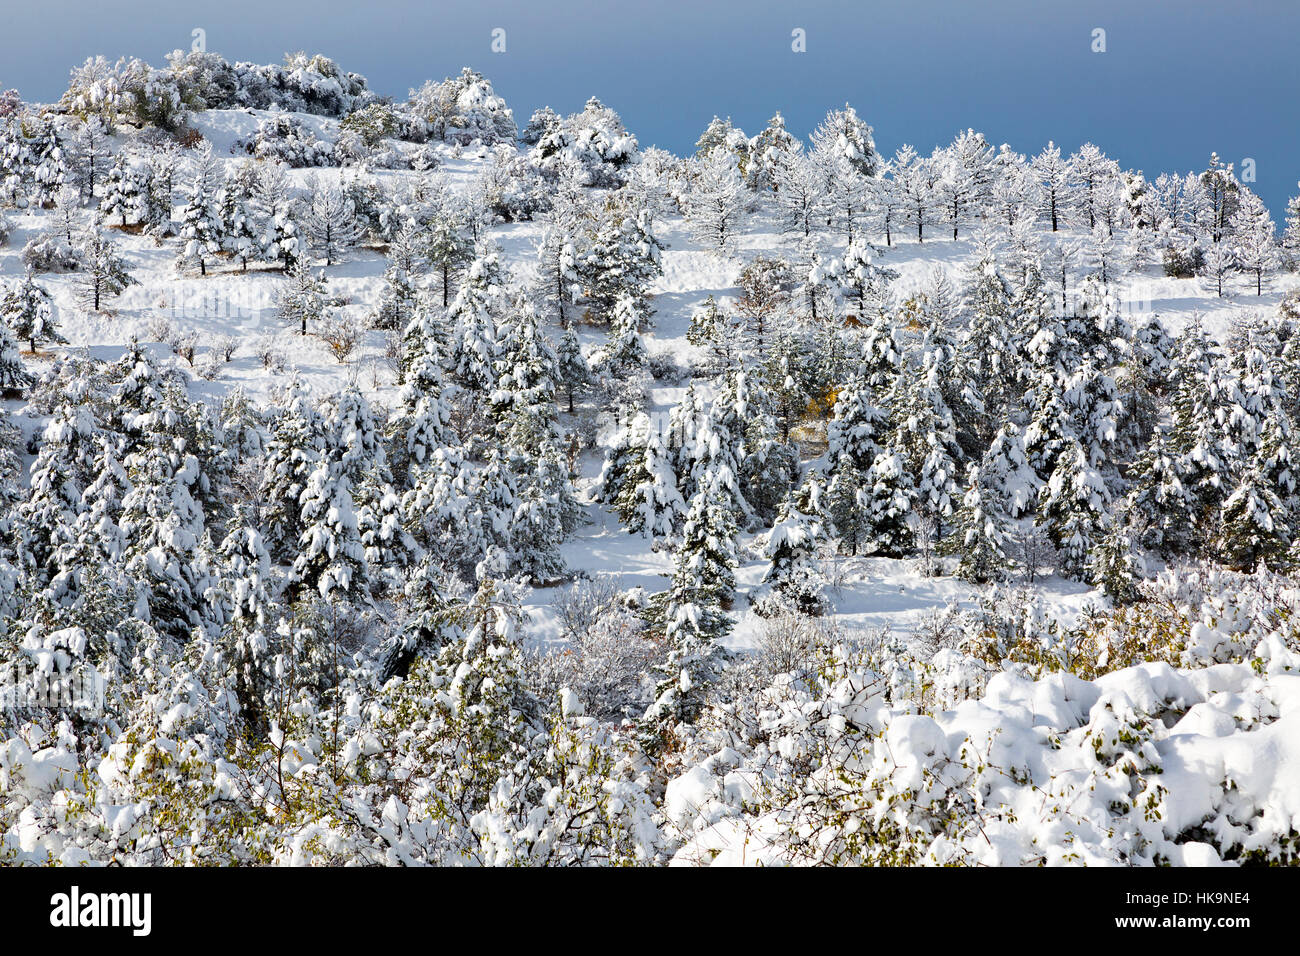 Winter scene in Armenia Stock Photo